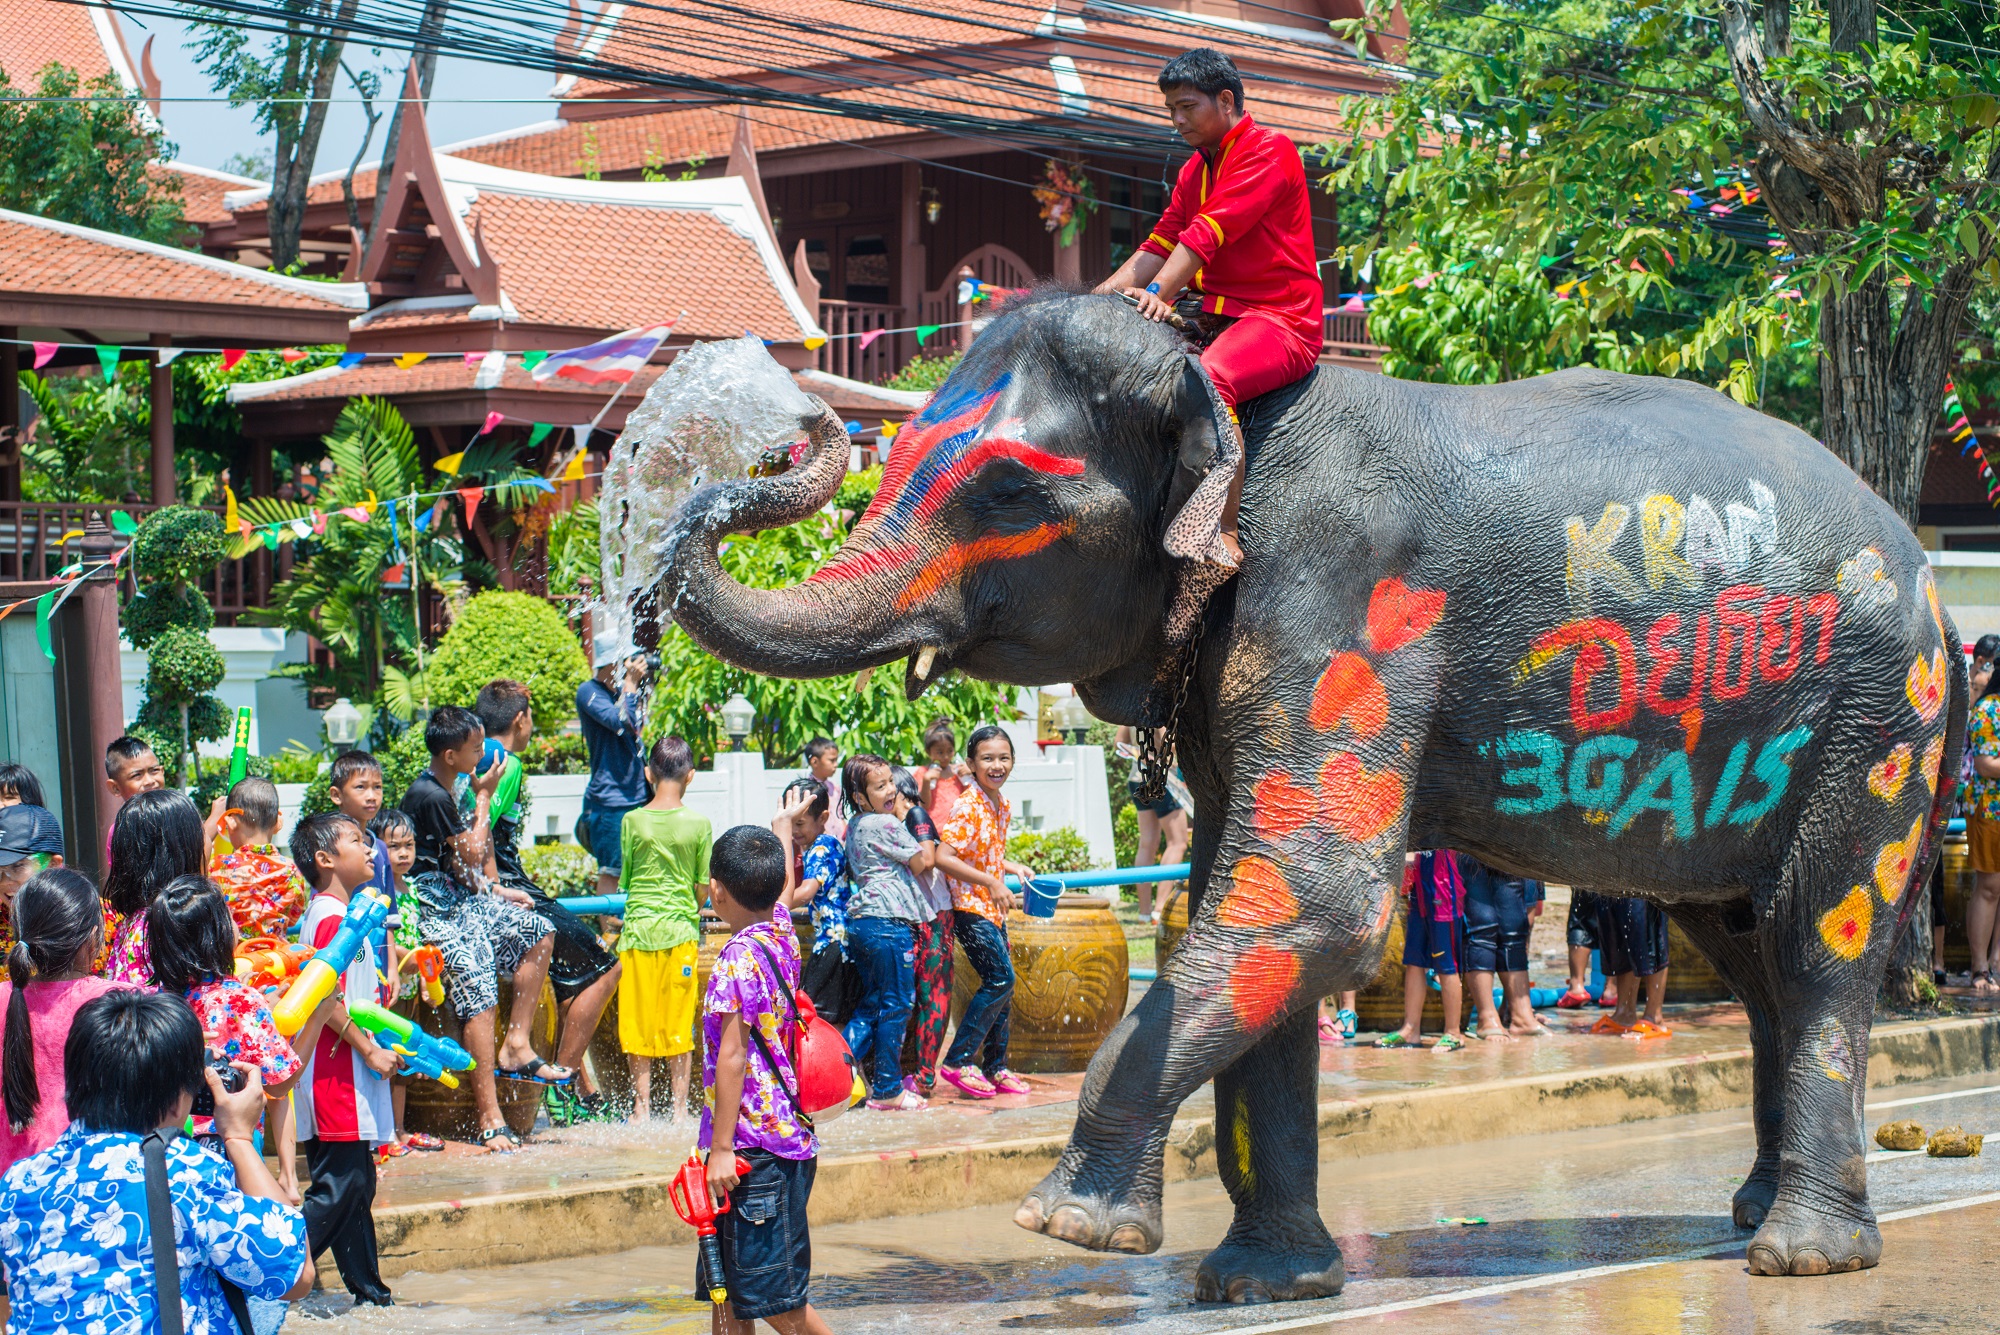 Mann sitzt auf einem bunt bemalten Elefant, Kinder spritzen mit Wasser.